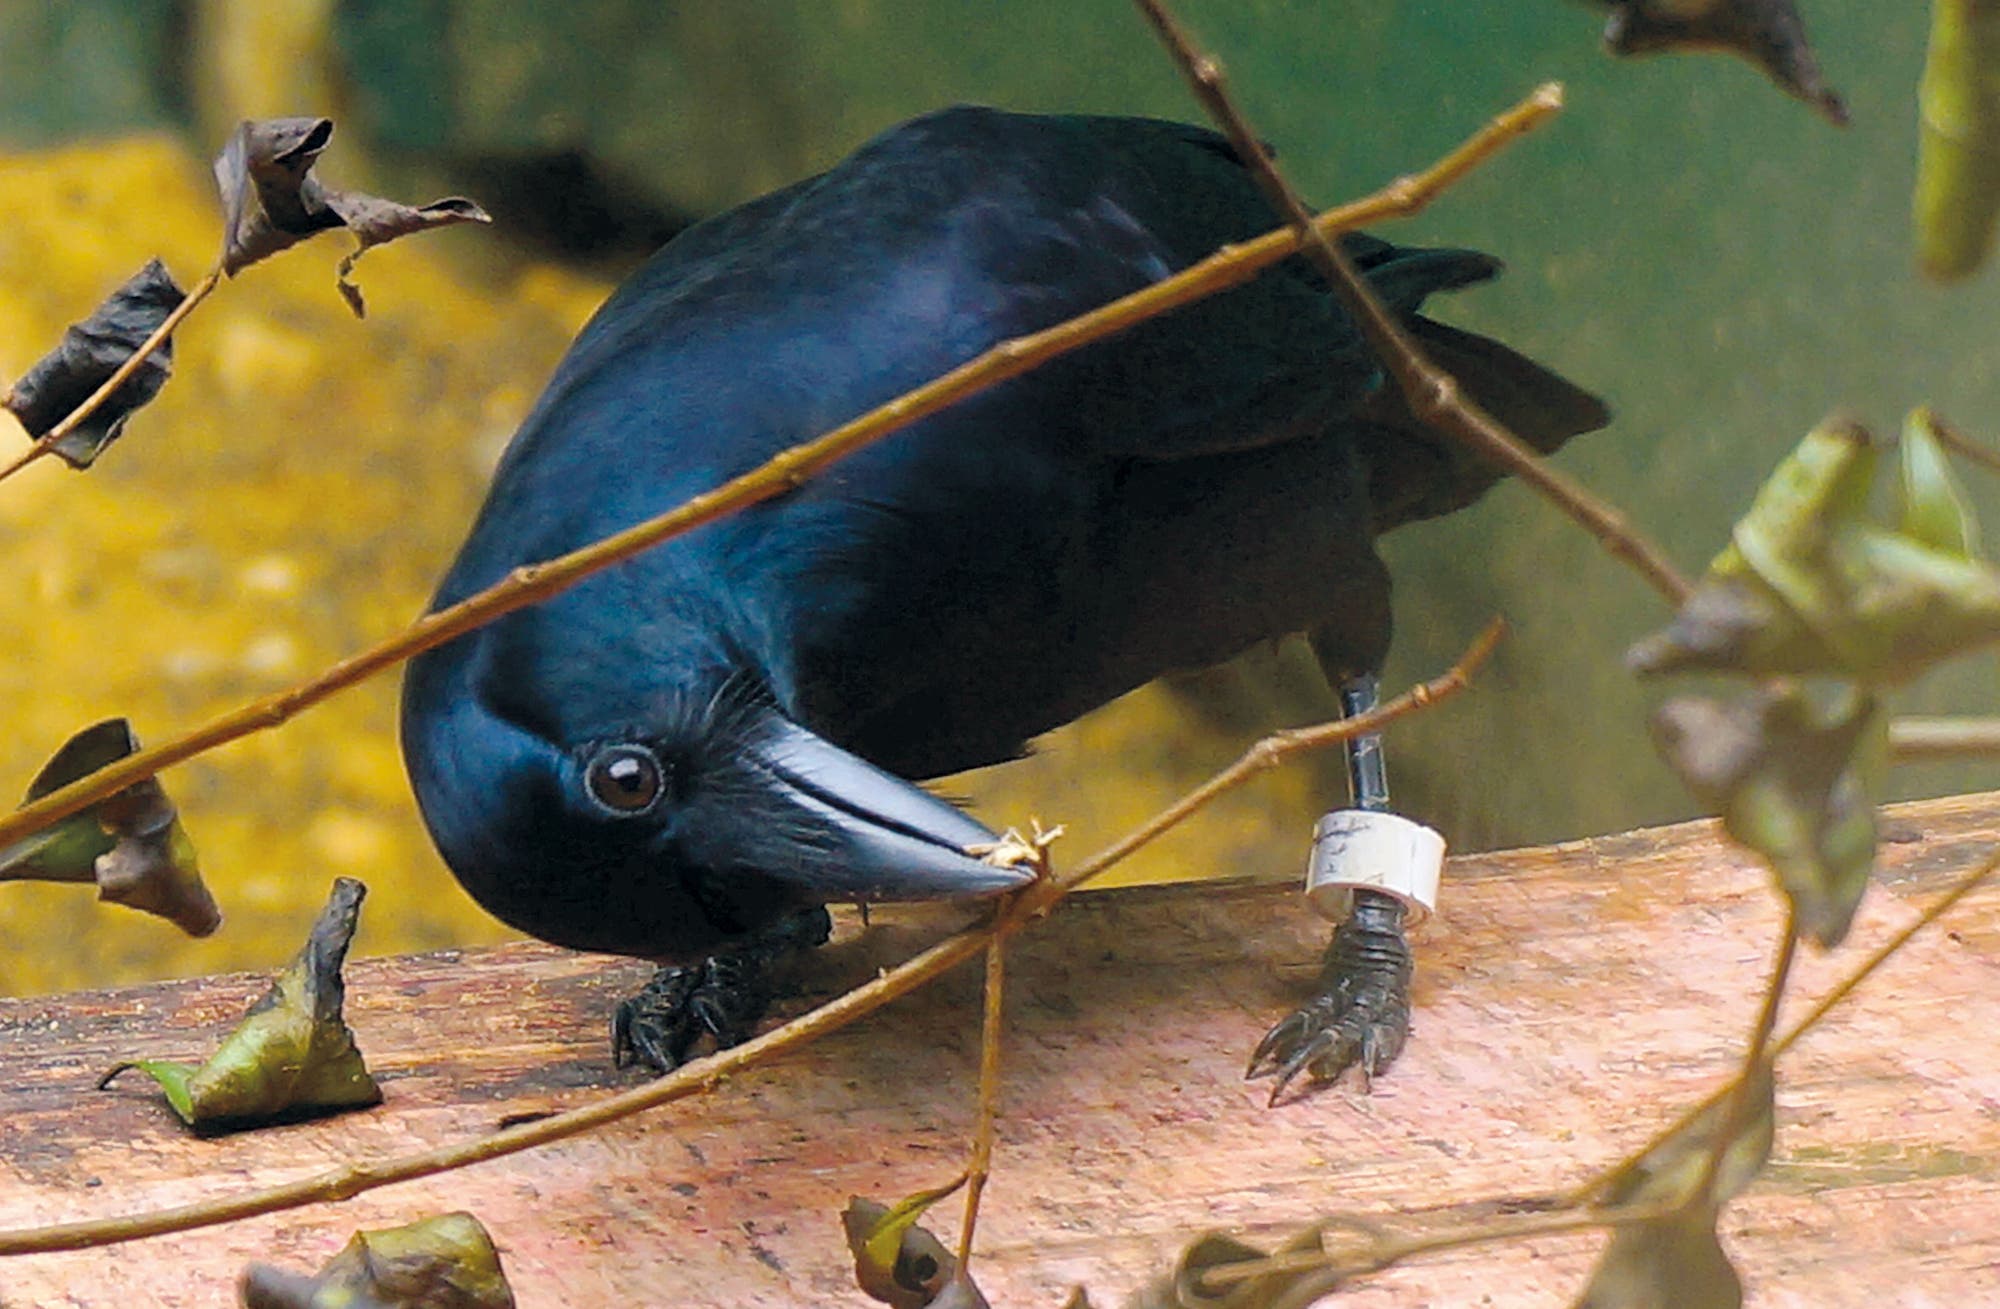 Eine Geradschnabelkrähe nutzt einen Zweig als Werkzeug, um an leckere Maden zu gelangen.